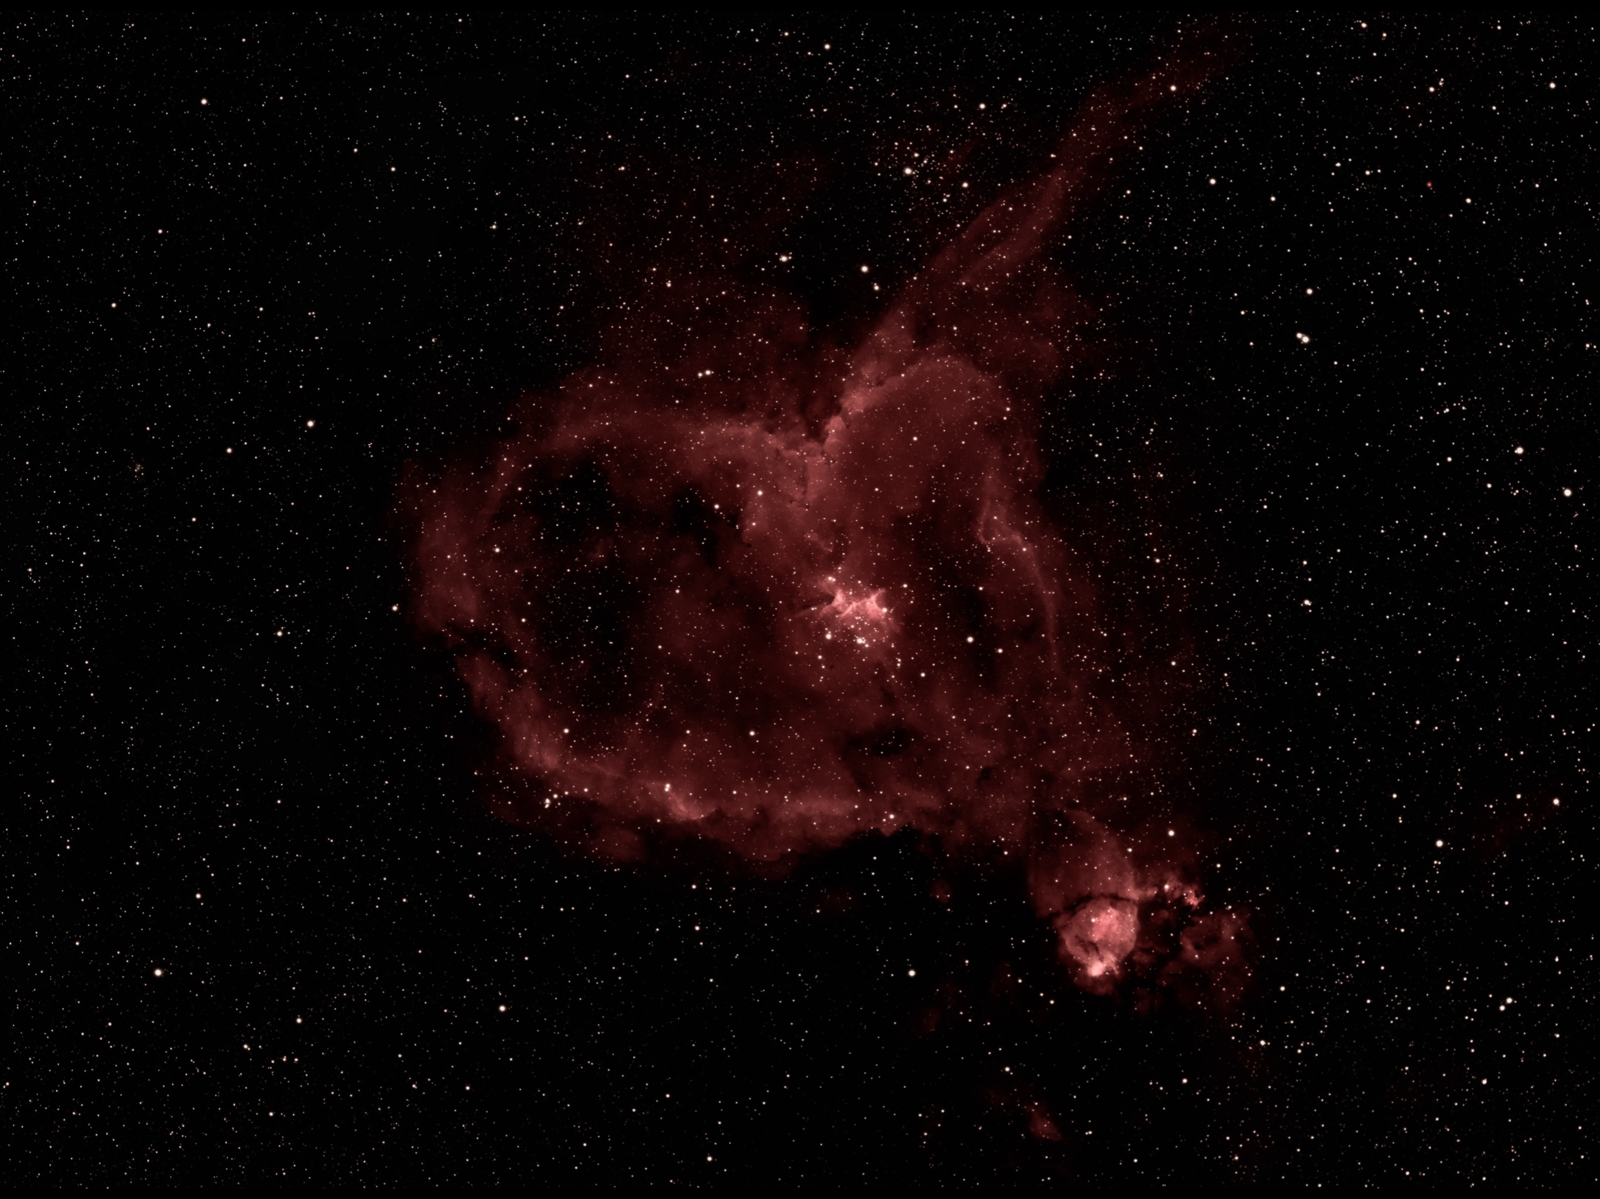 Heart Nebula IC1805 in Narrowband